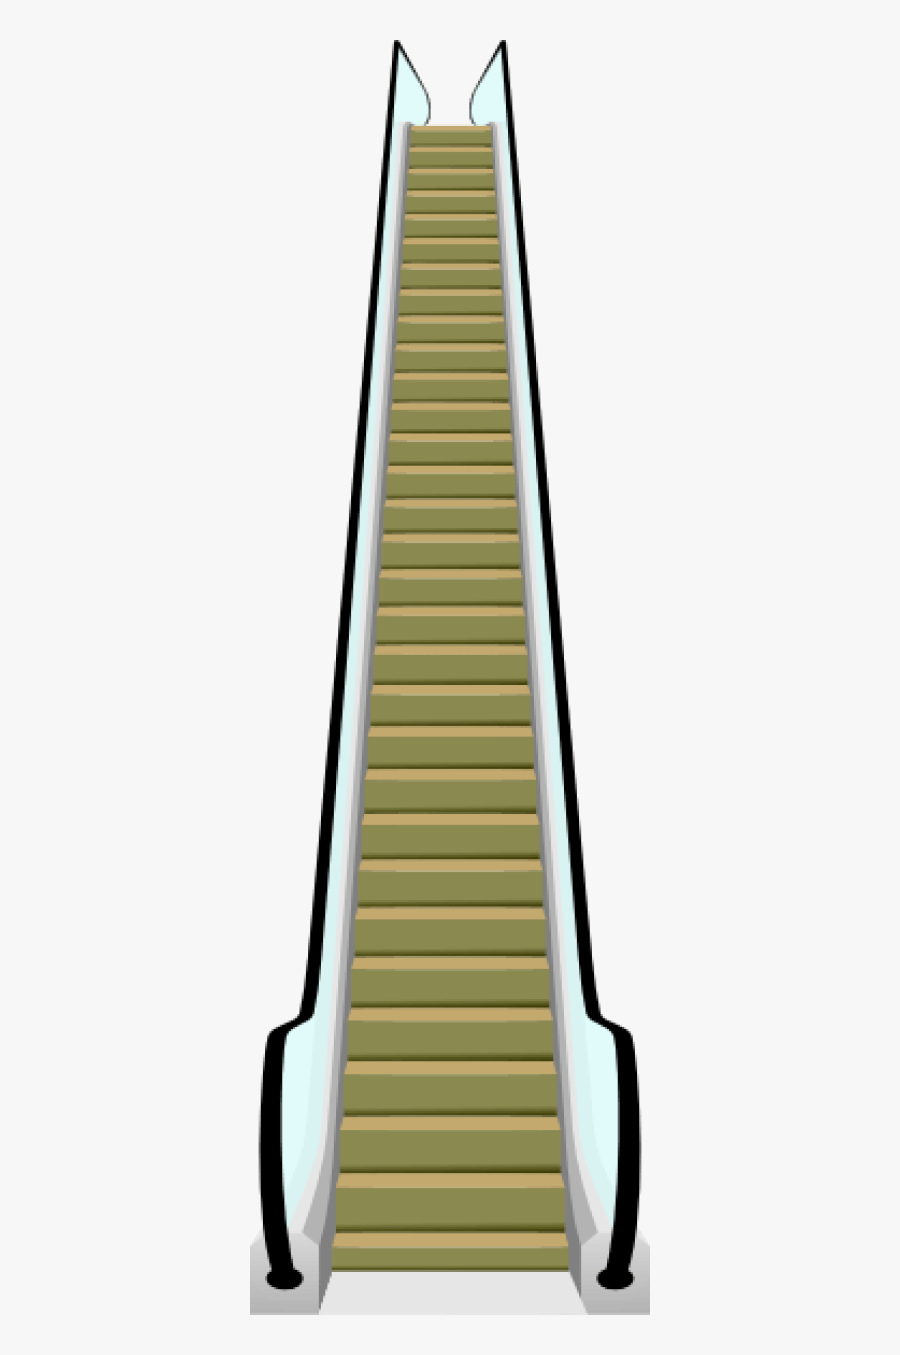 Escalator Clipart, Transparent Clipart